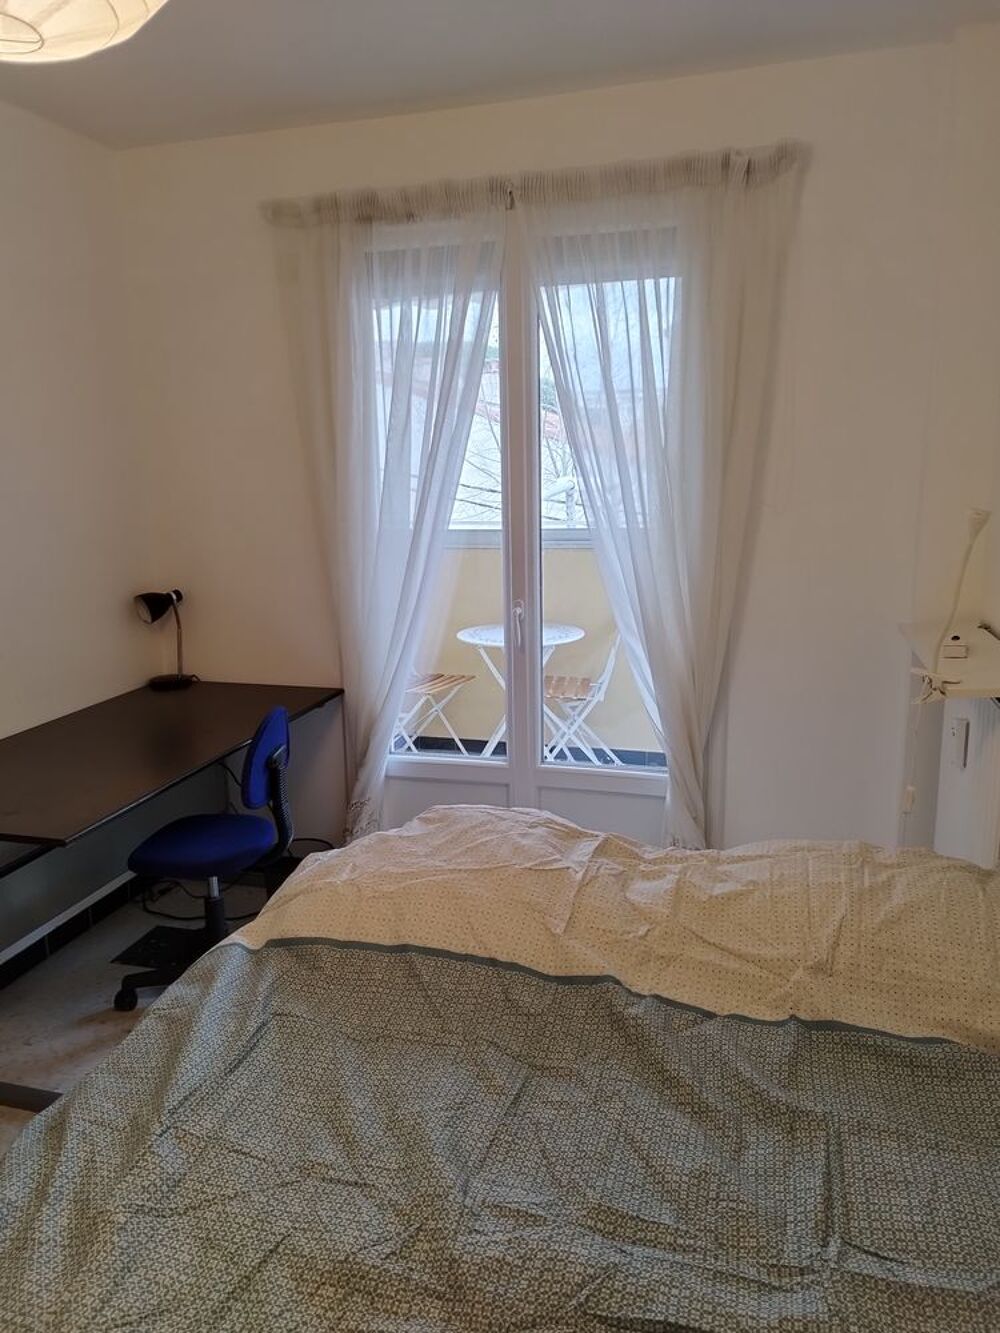 Location Colocation Chambre meuble dans colocation Toulon